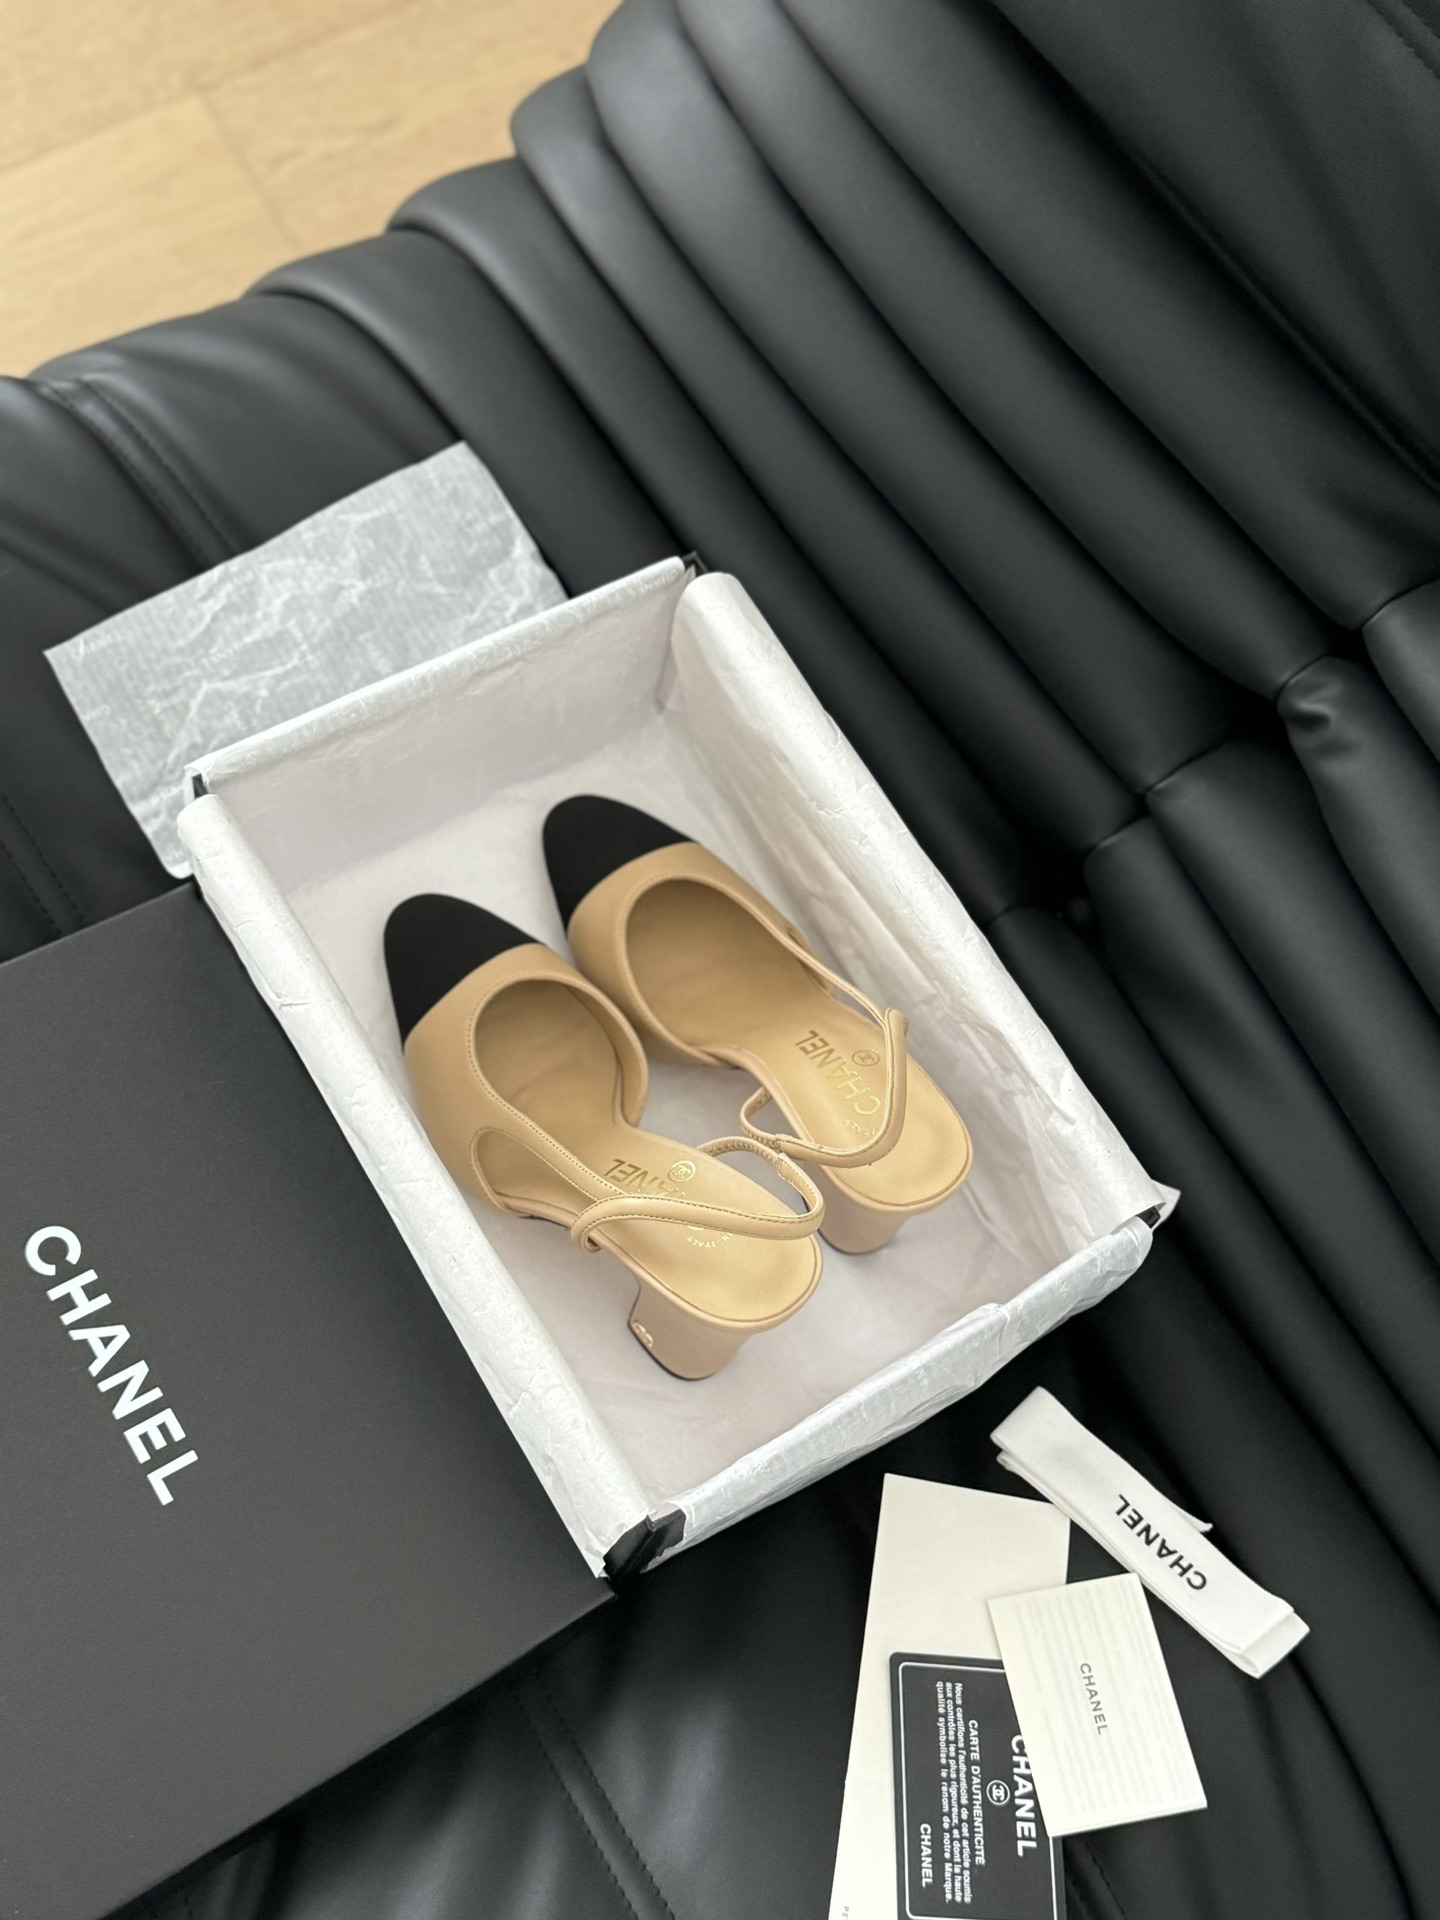 Wo zu kaufen
 Chanel Schuhe Pumps Mit Hohem Absatz Sandalen Kaufen Sie die Replik in bester Qualität
 Rindsleder Schaffell